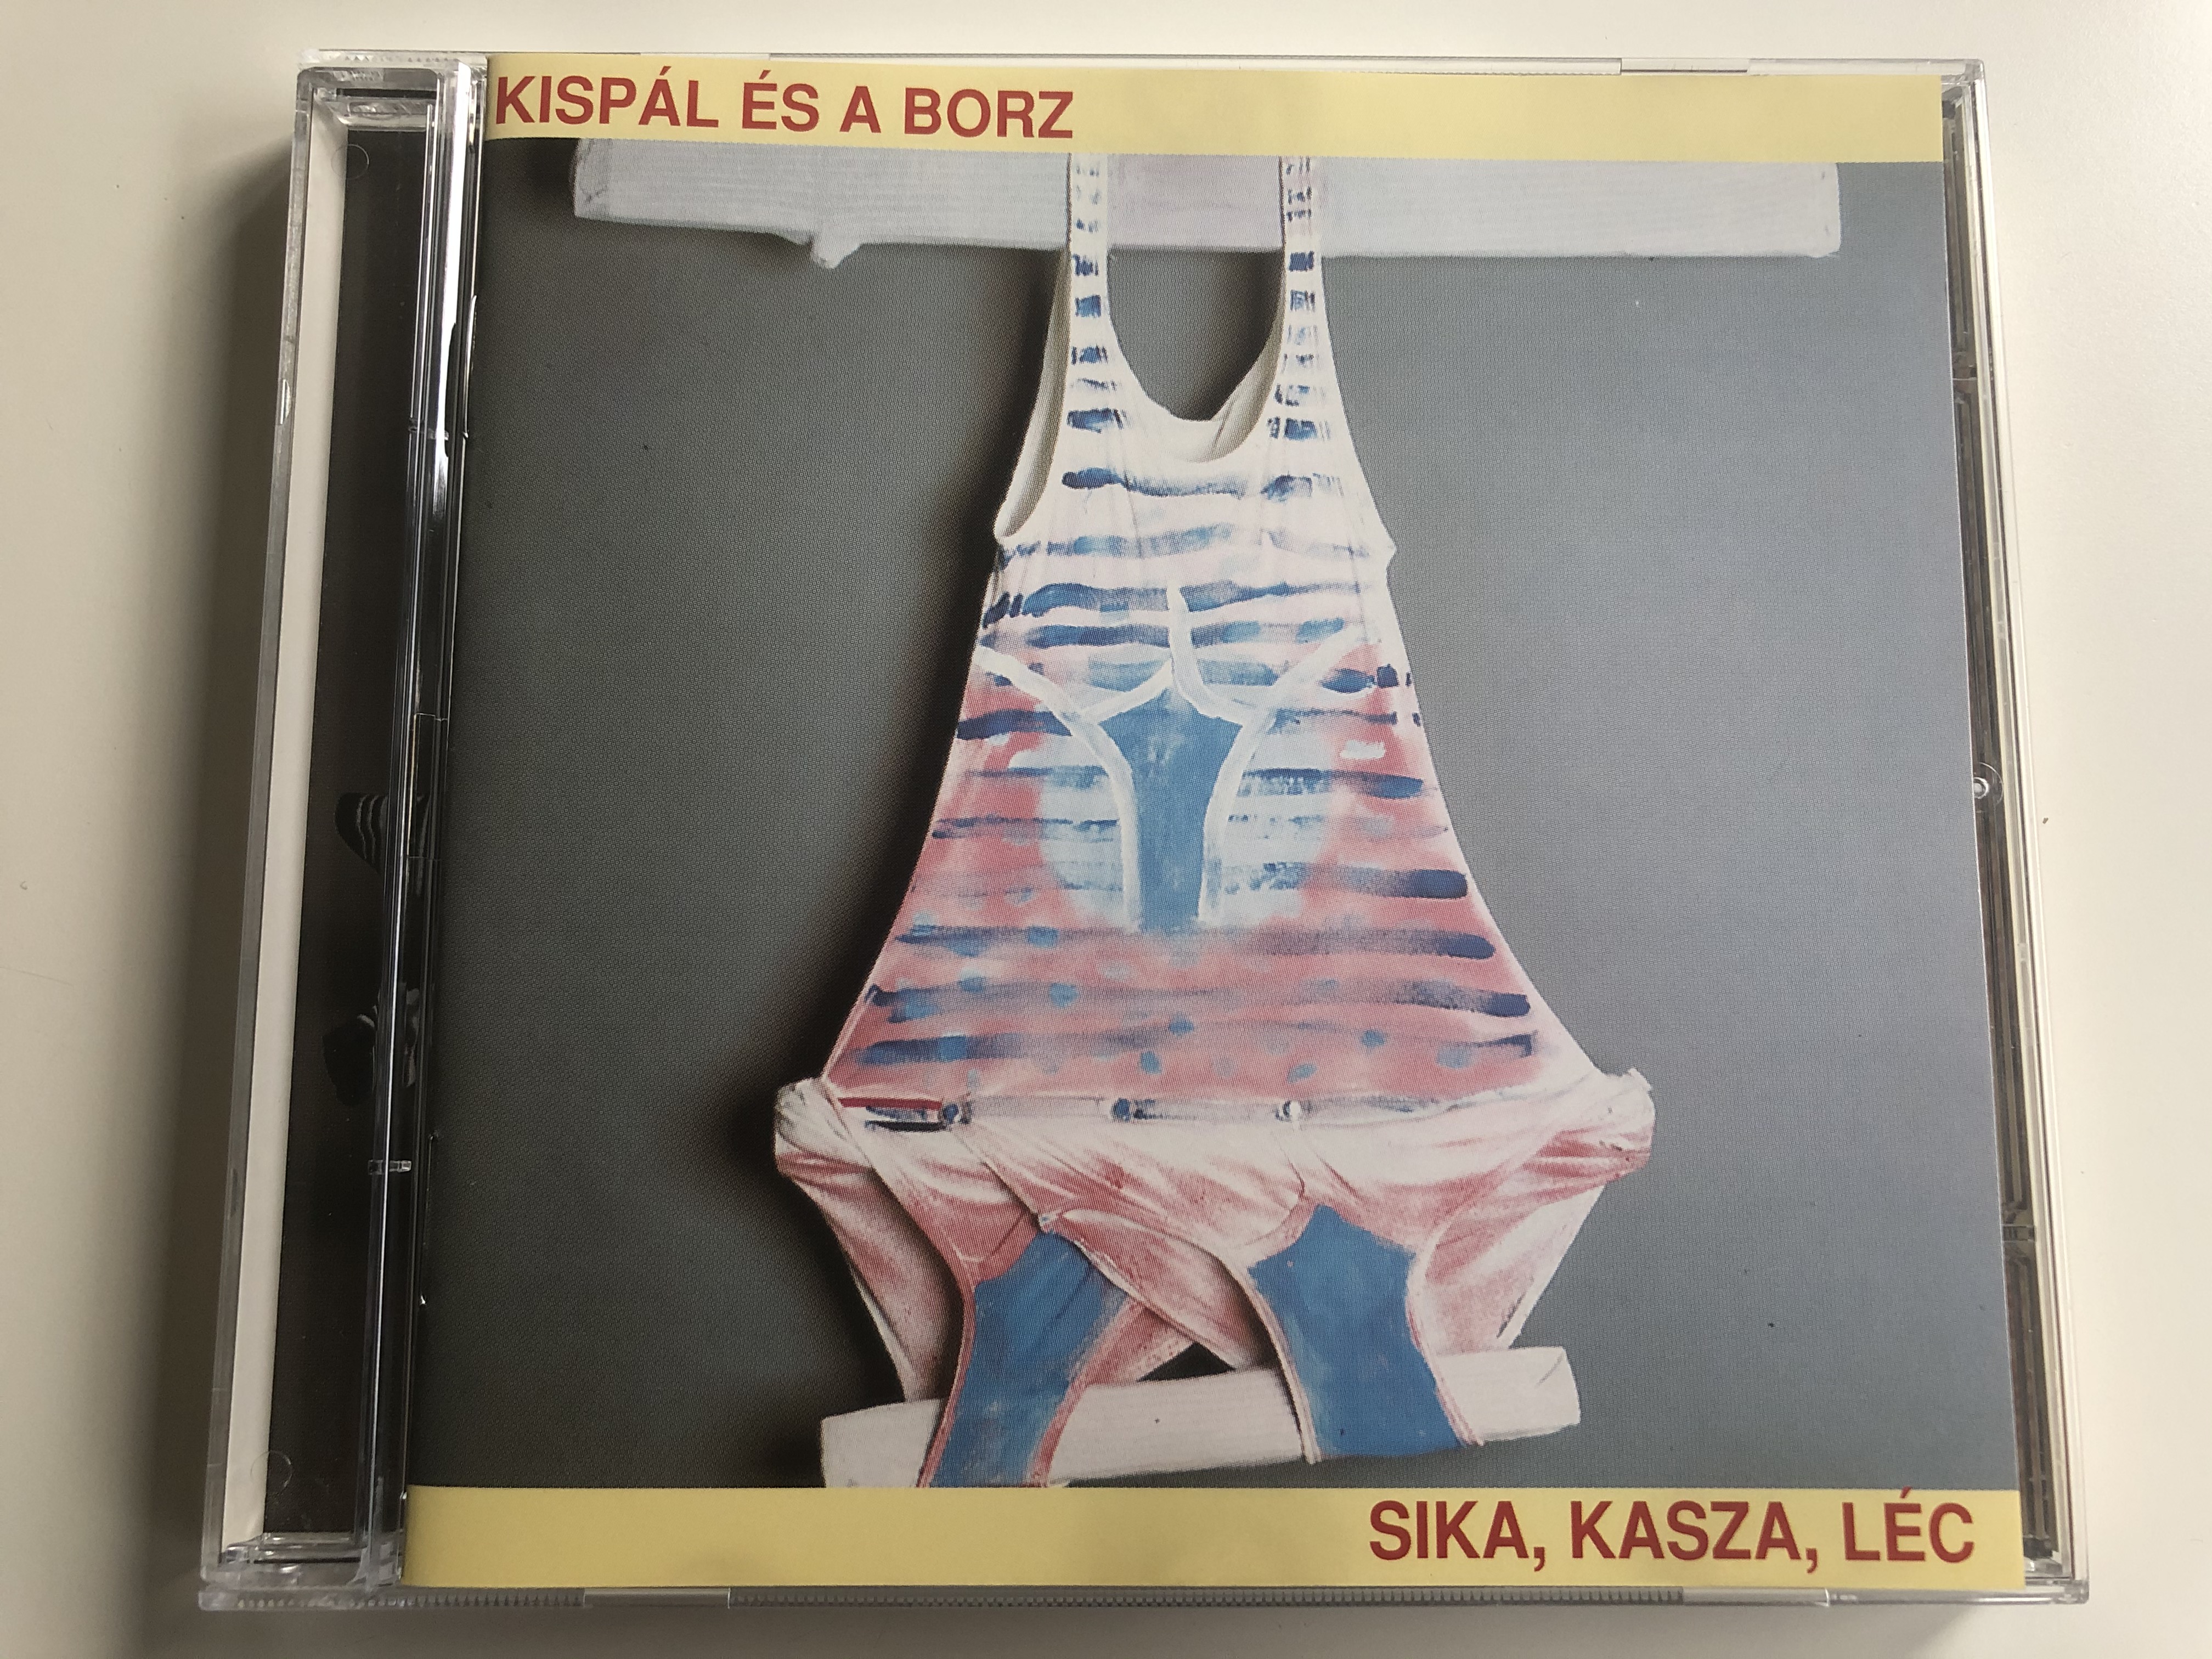 kisp-l-s-a-borz-sika-kasza-l-c-3t-audio-cd-1994-stereo-523-793-2-1-.jpg